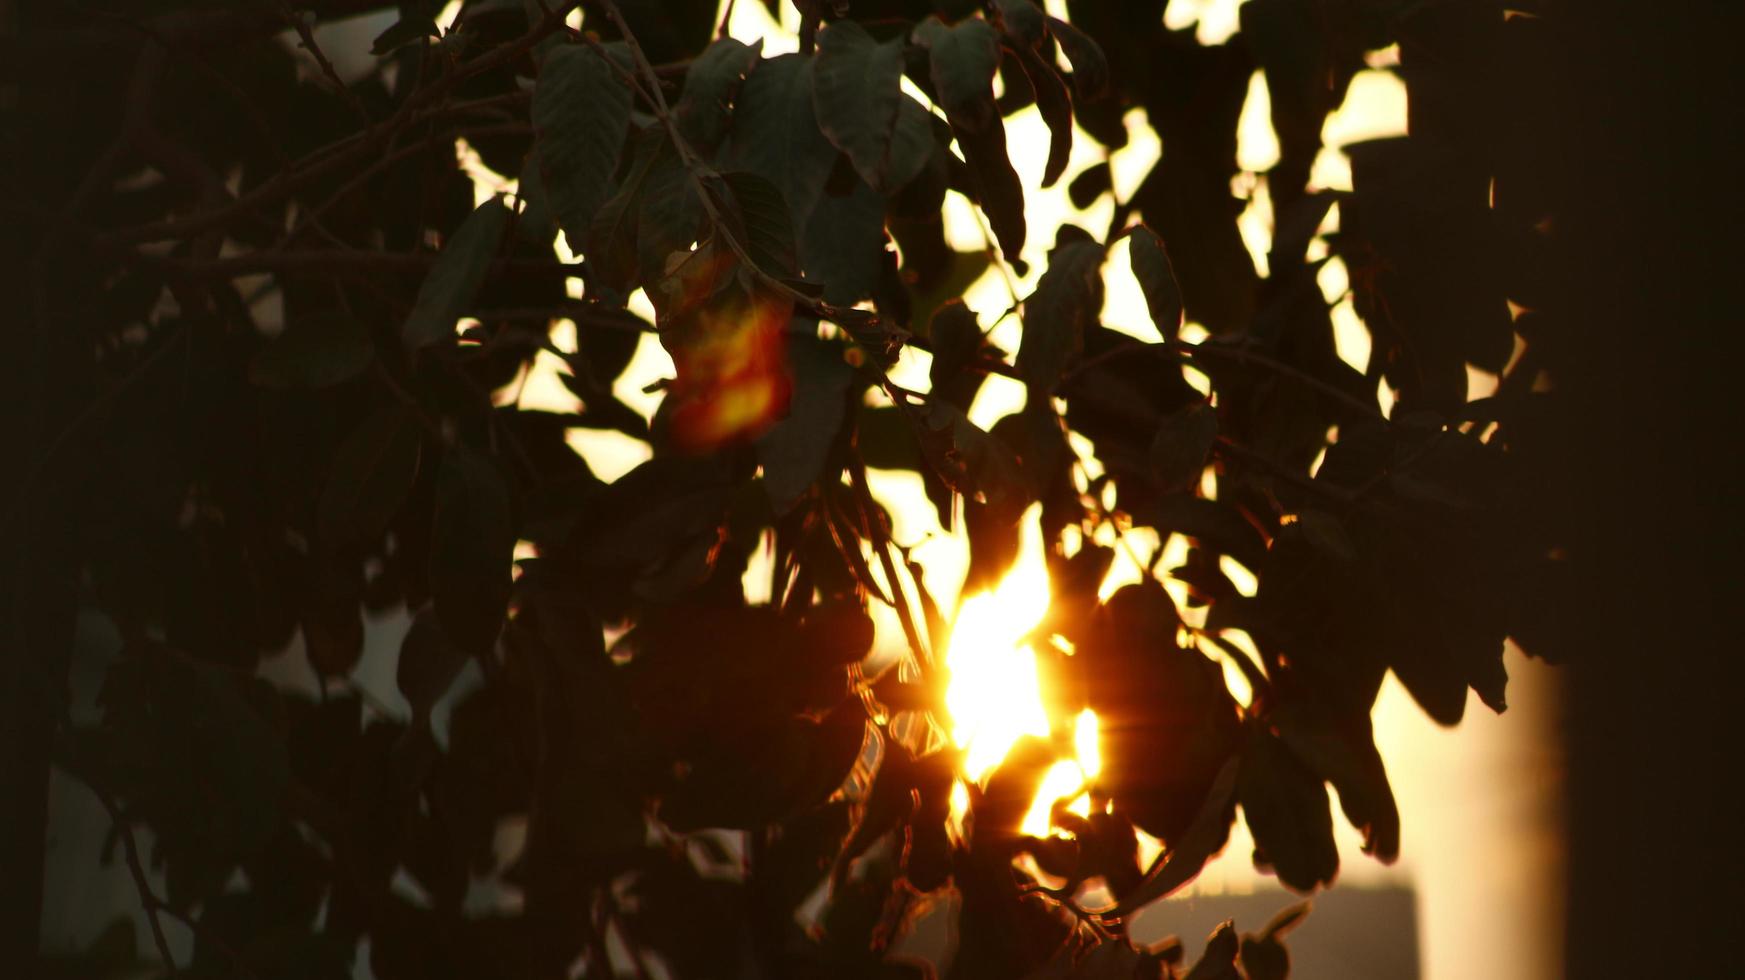 Sol lysande genom träd löv i utomhus- trädgård i karachi pakistan 2022 foto